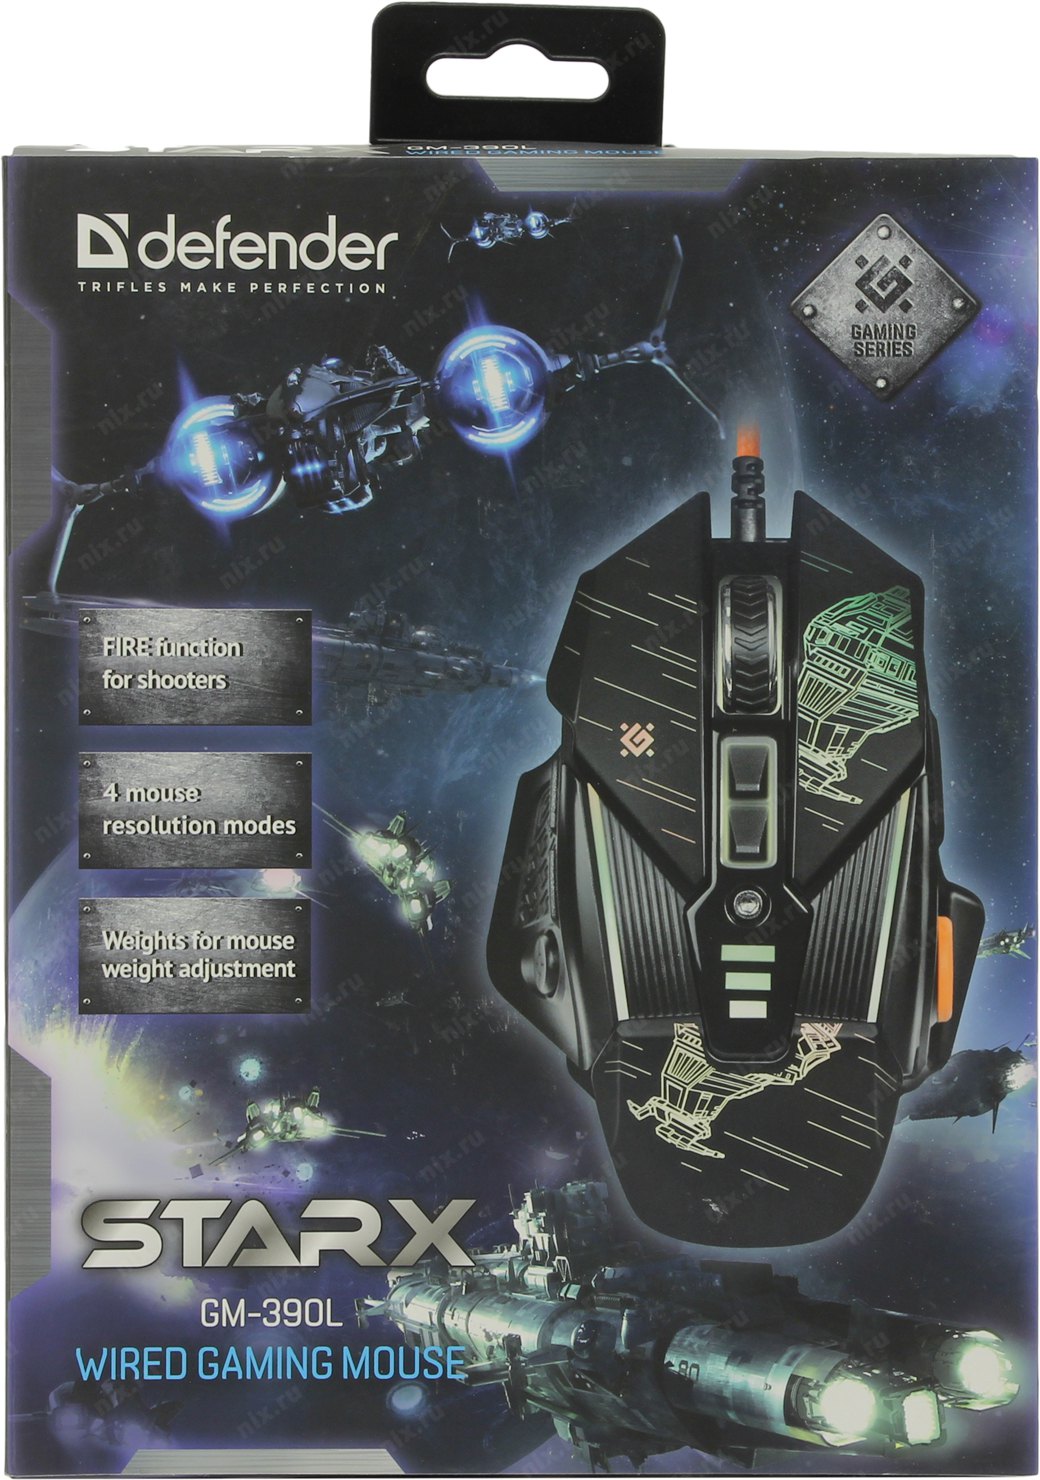 Defender starx. Defender STARX GM-390l. Проводная игровая мышь STARX GM-390l оптика,8кнопок,грузики,3200dpi Defender. Игровая мышь STARX Defender. Мышь проводная Defender STARX GM-390l черный.